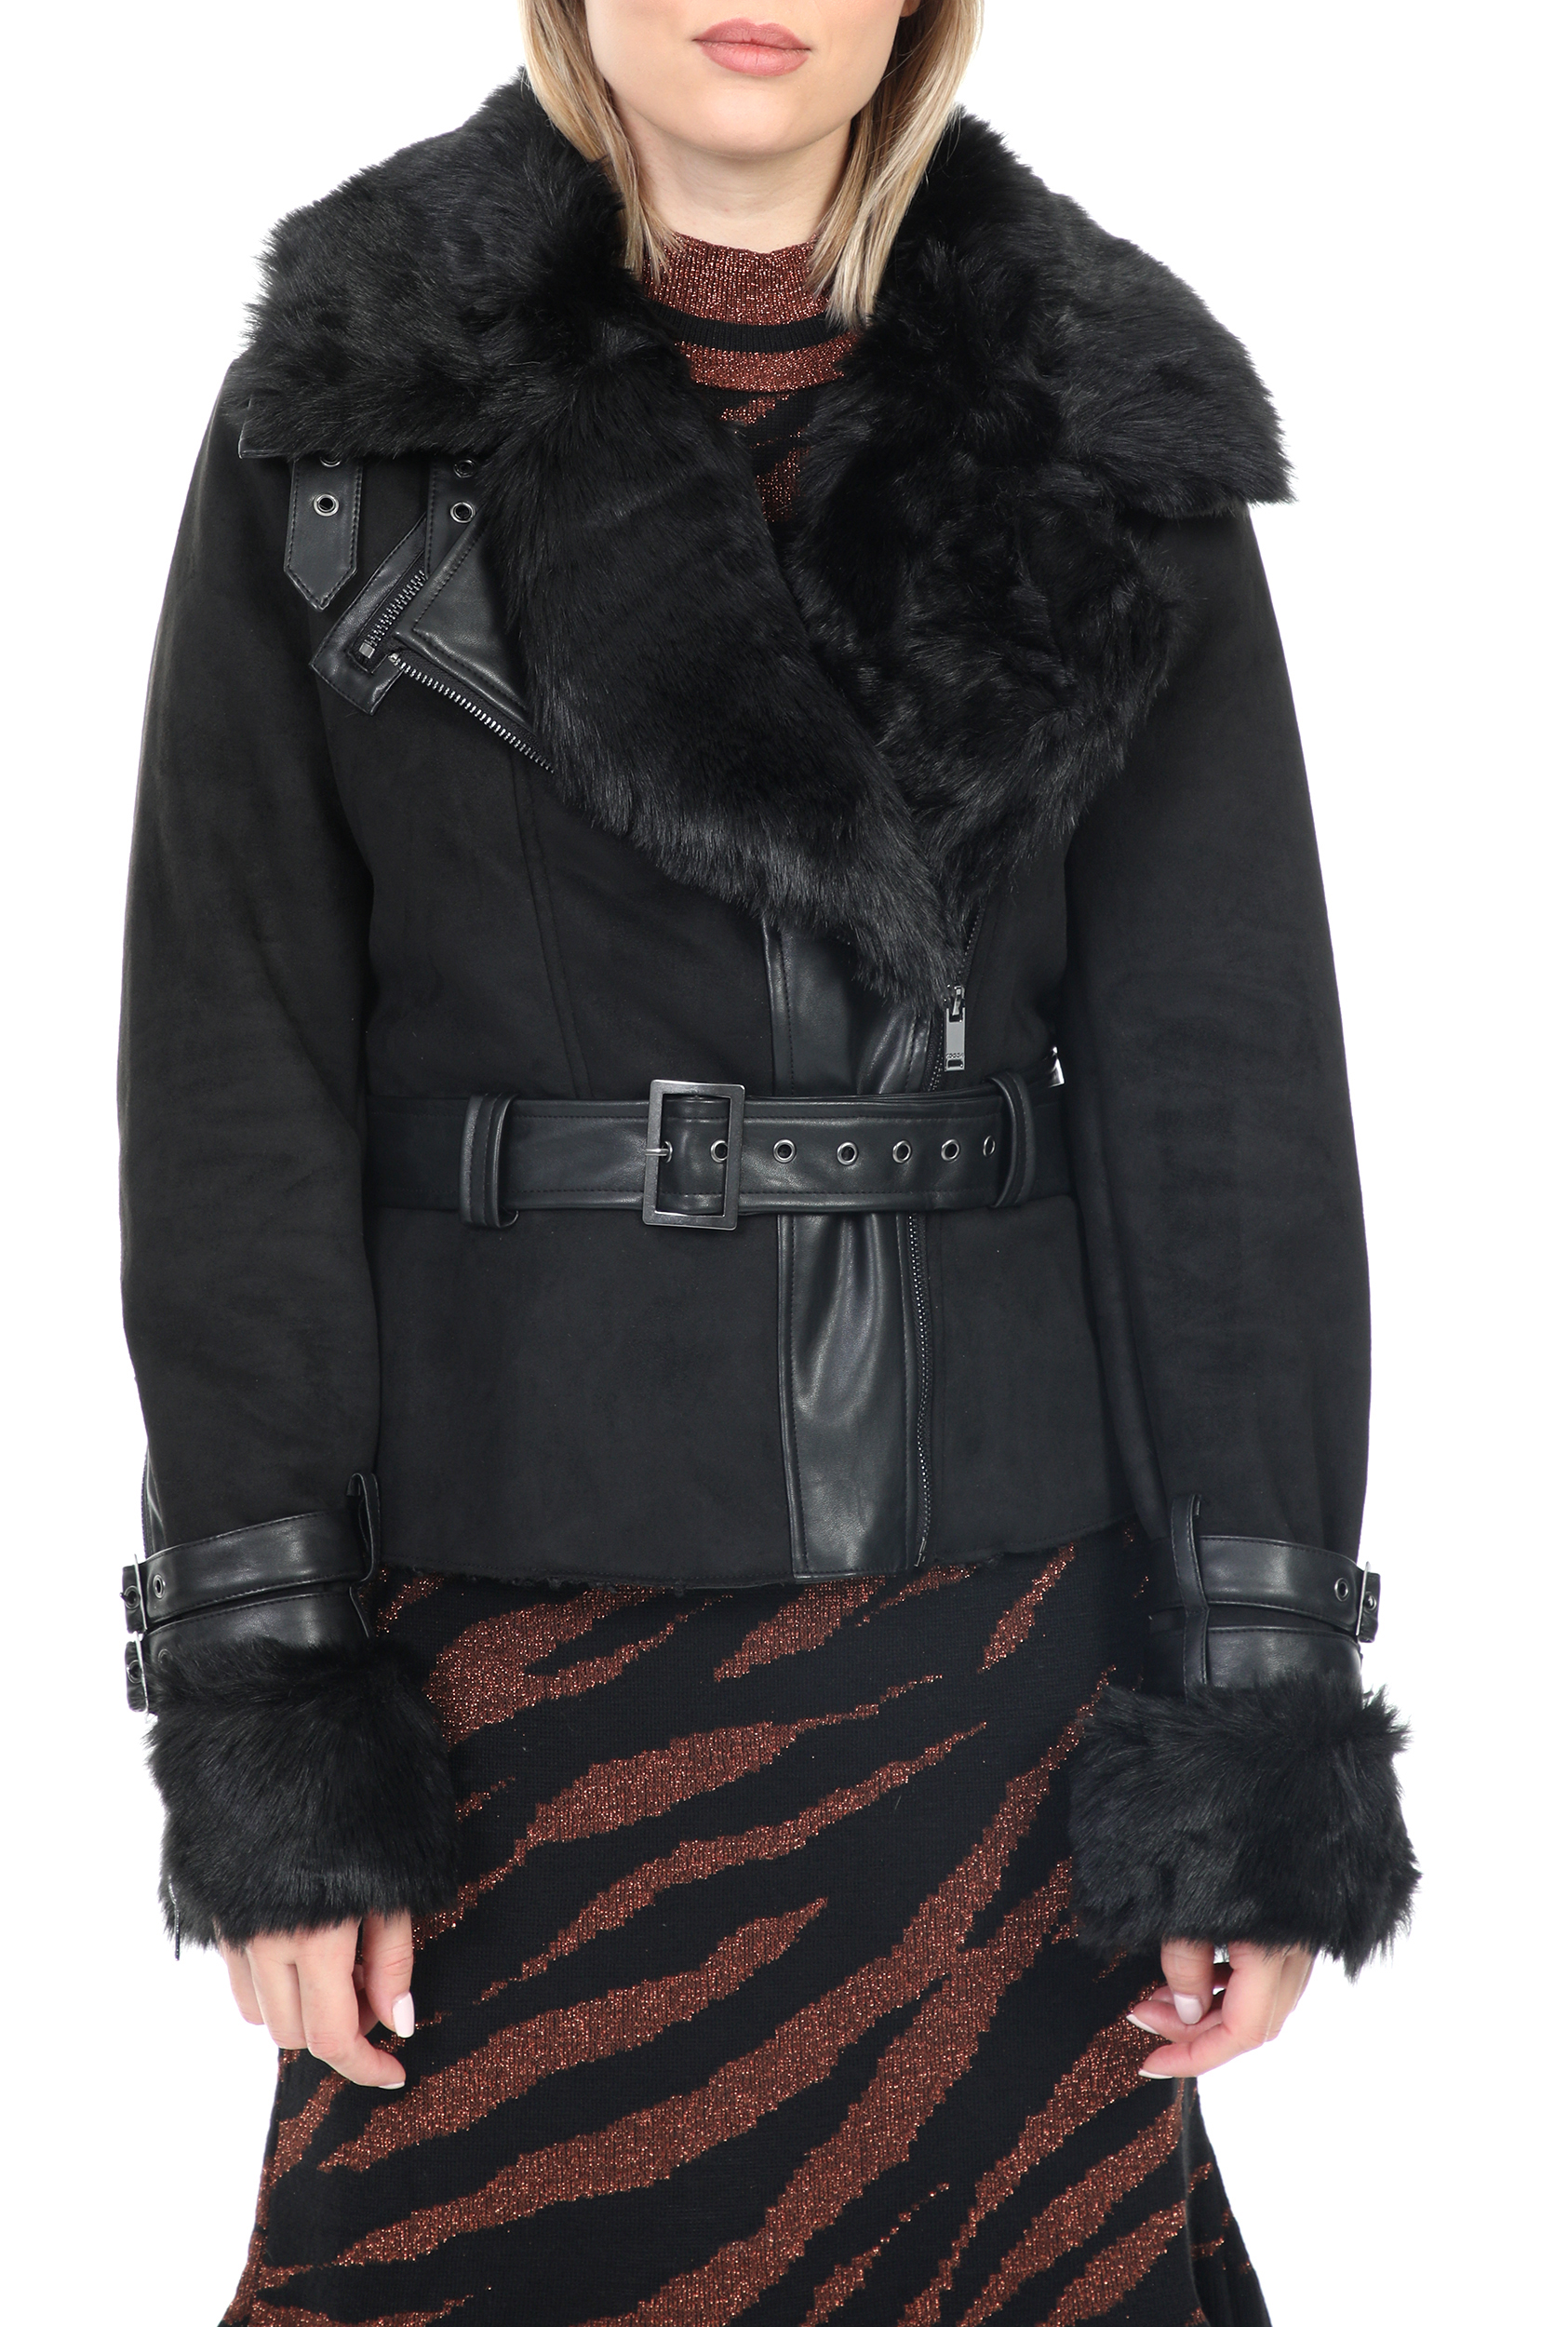 Γυναικεία/Ρούχα/Πανωφόρια/Παλτό KOCCA - Γυναικείο jacket KOCCA TRACES μαύρο